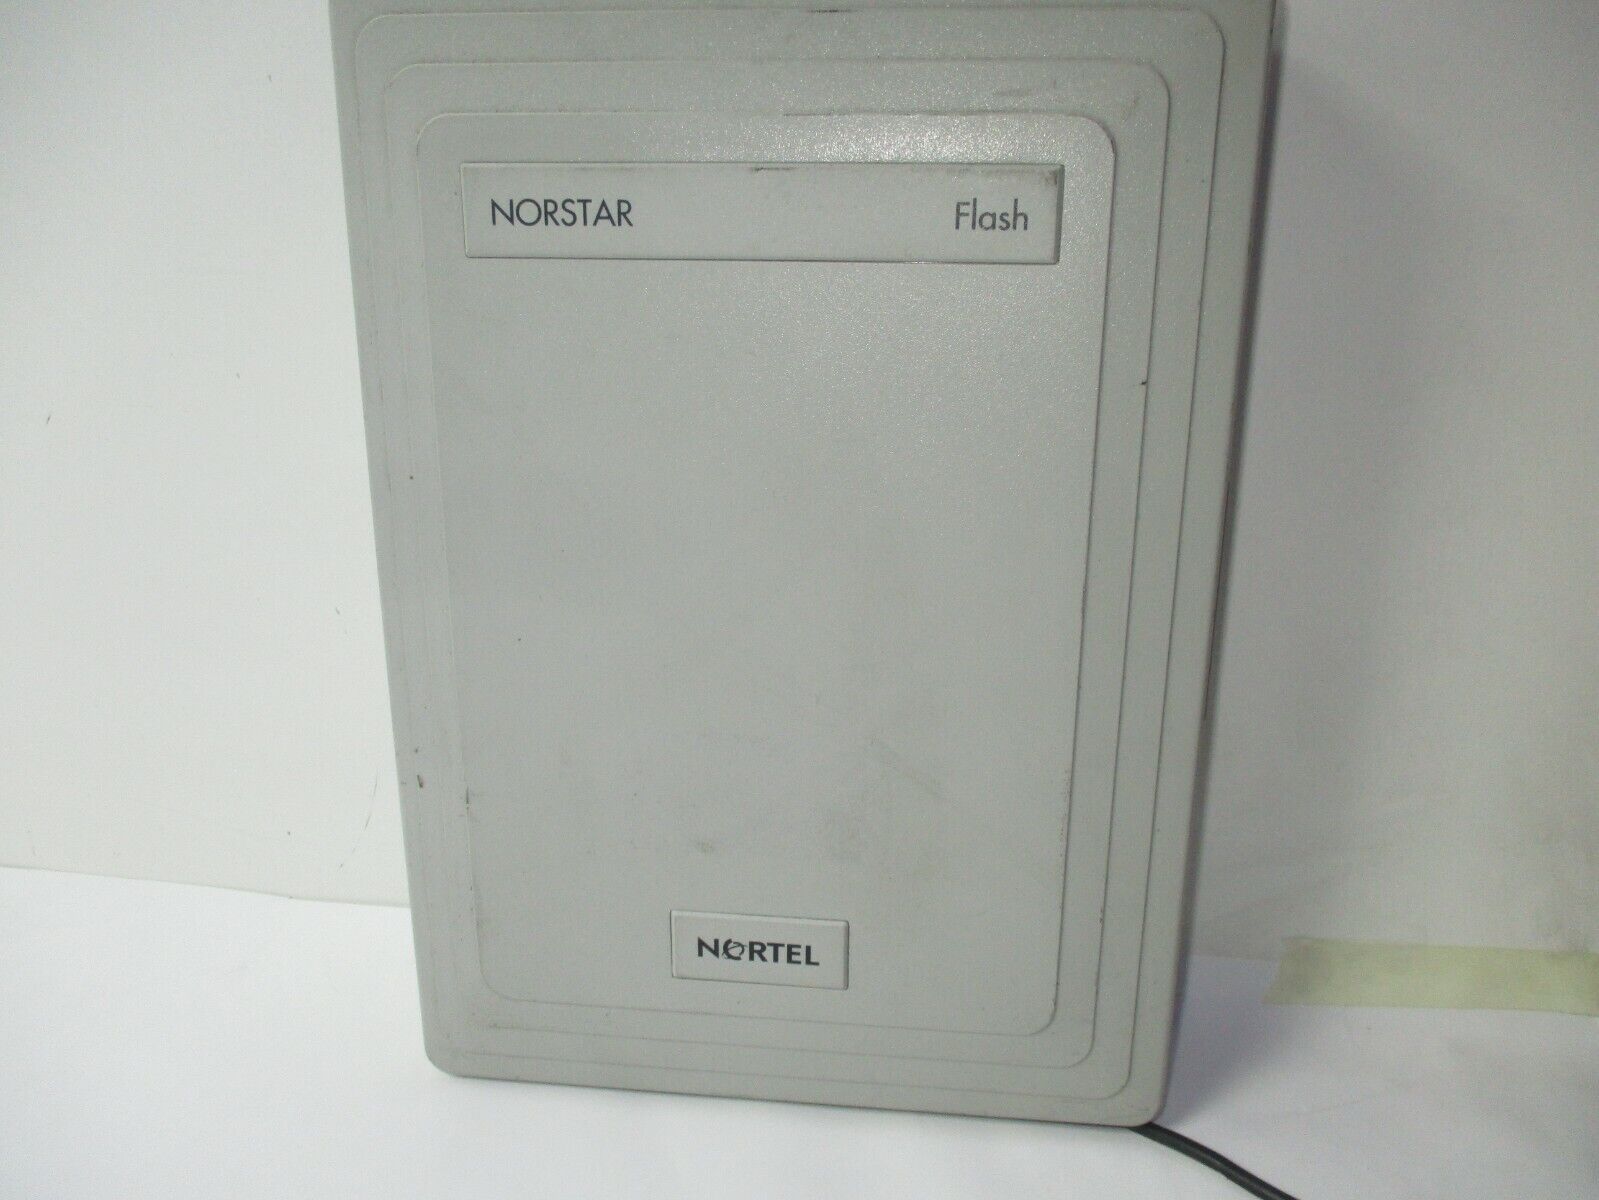 Nortel Startalk Flash Voice Mail 1.9 With Norstar Flash Nt5b78eg Nt5b2455 T5-a3